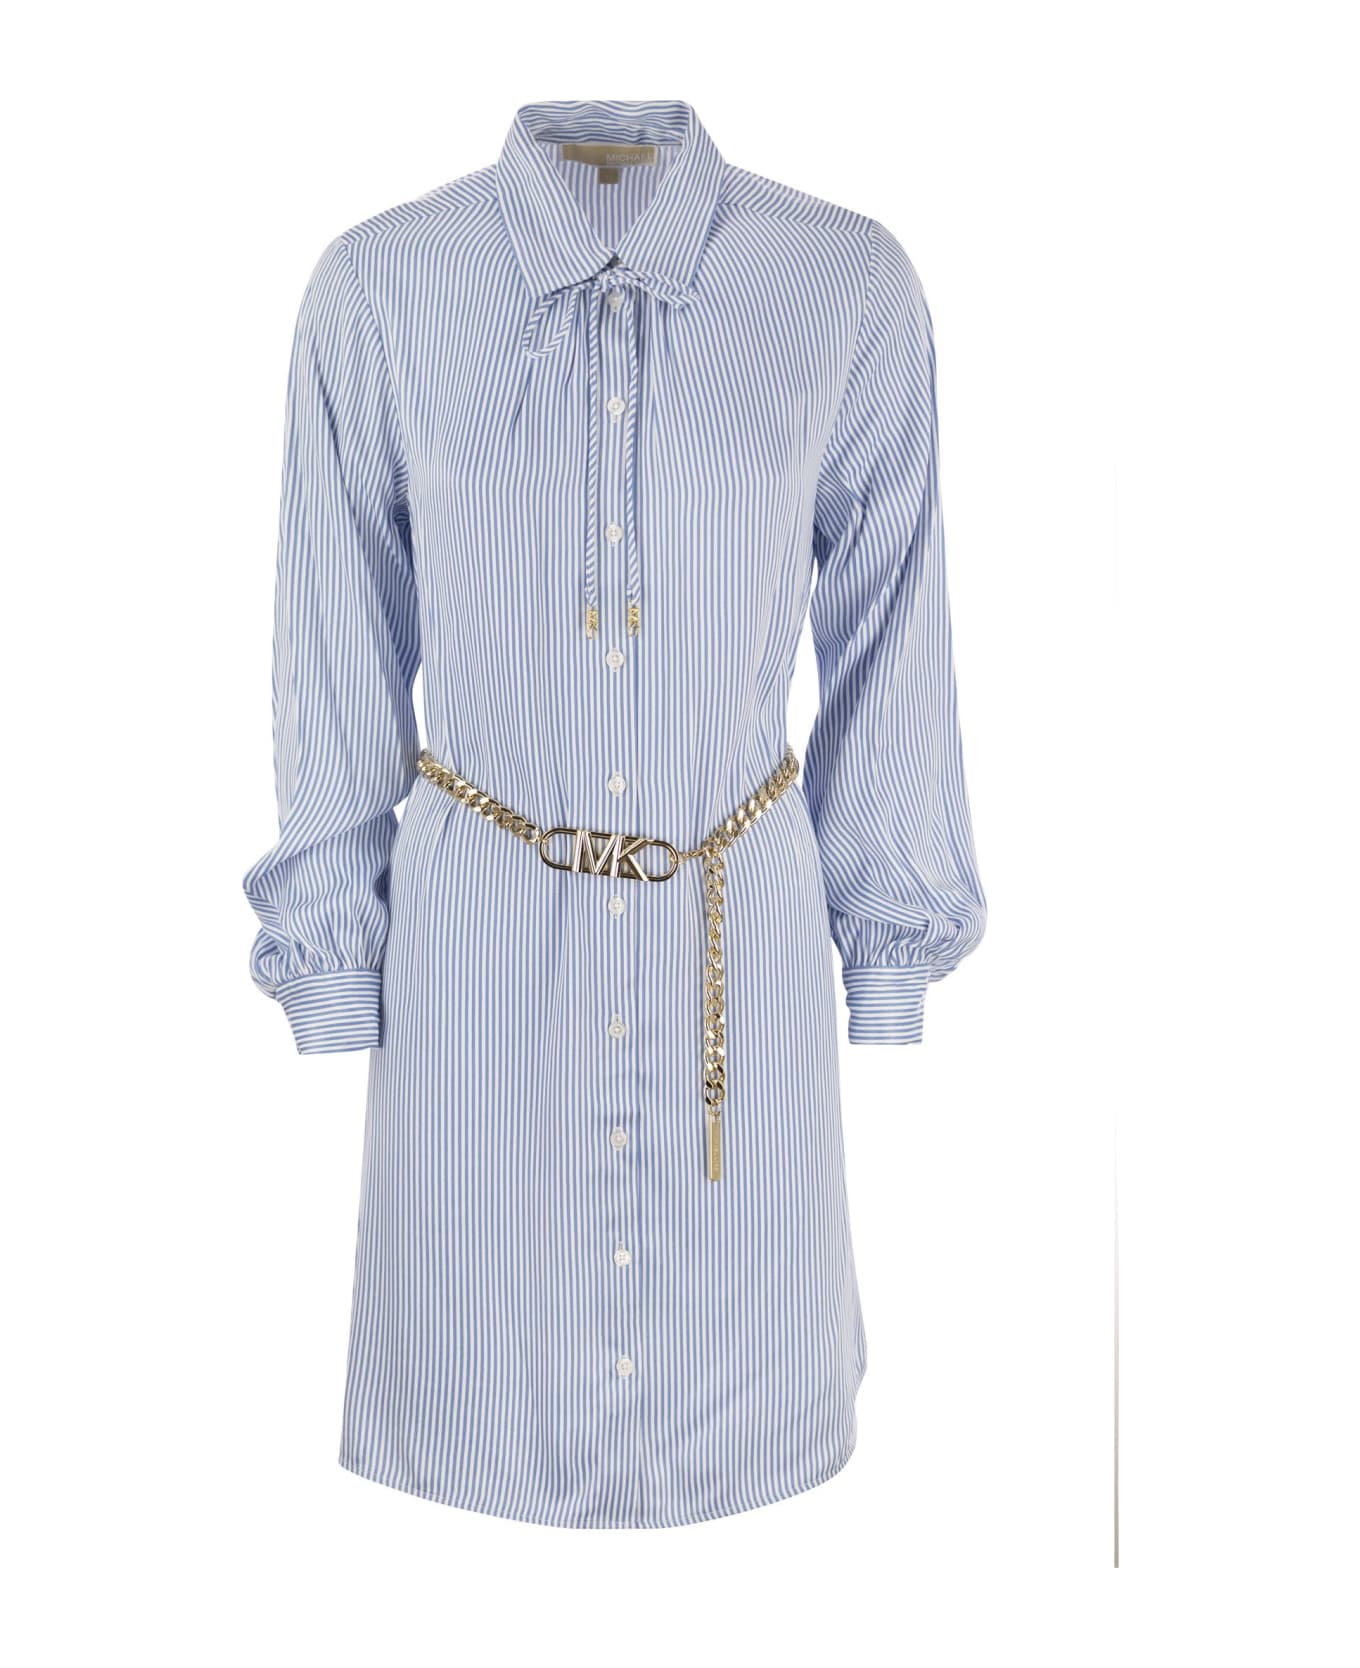 Michael Kors Chemisier Dress With Belt - Light Blue